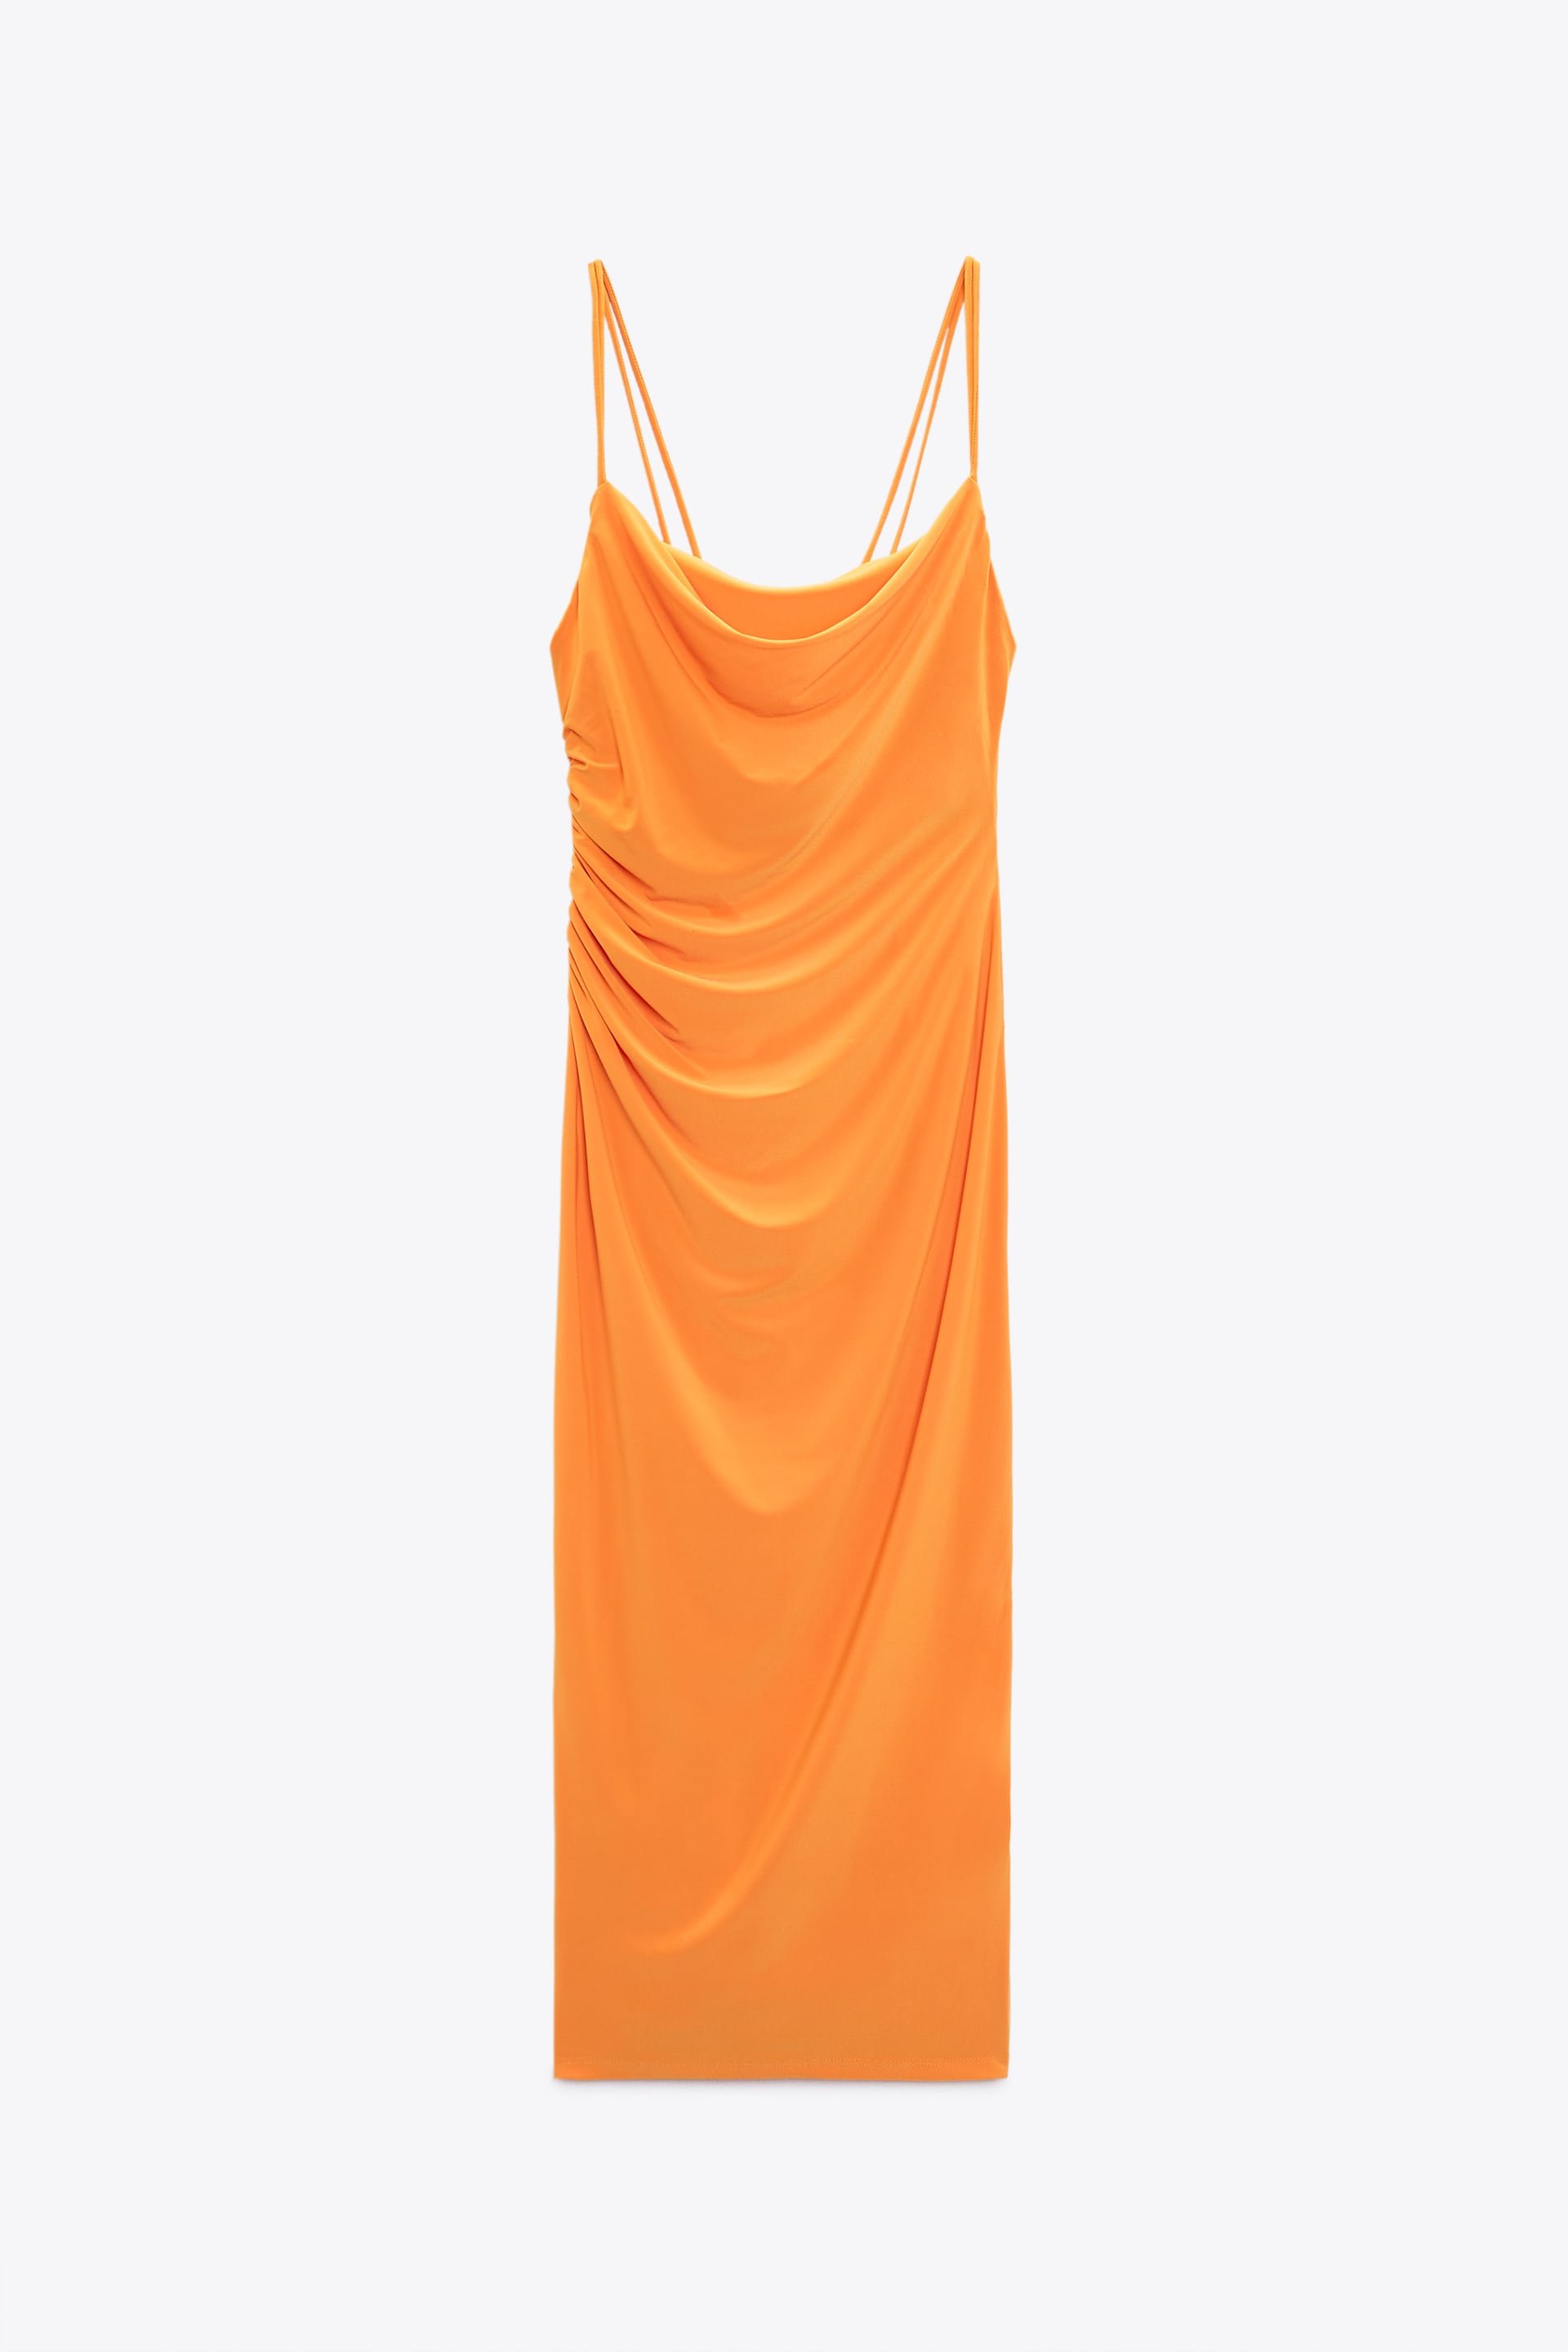 Zara Draped Neckline Midi Dress in Orange.jpg